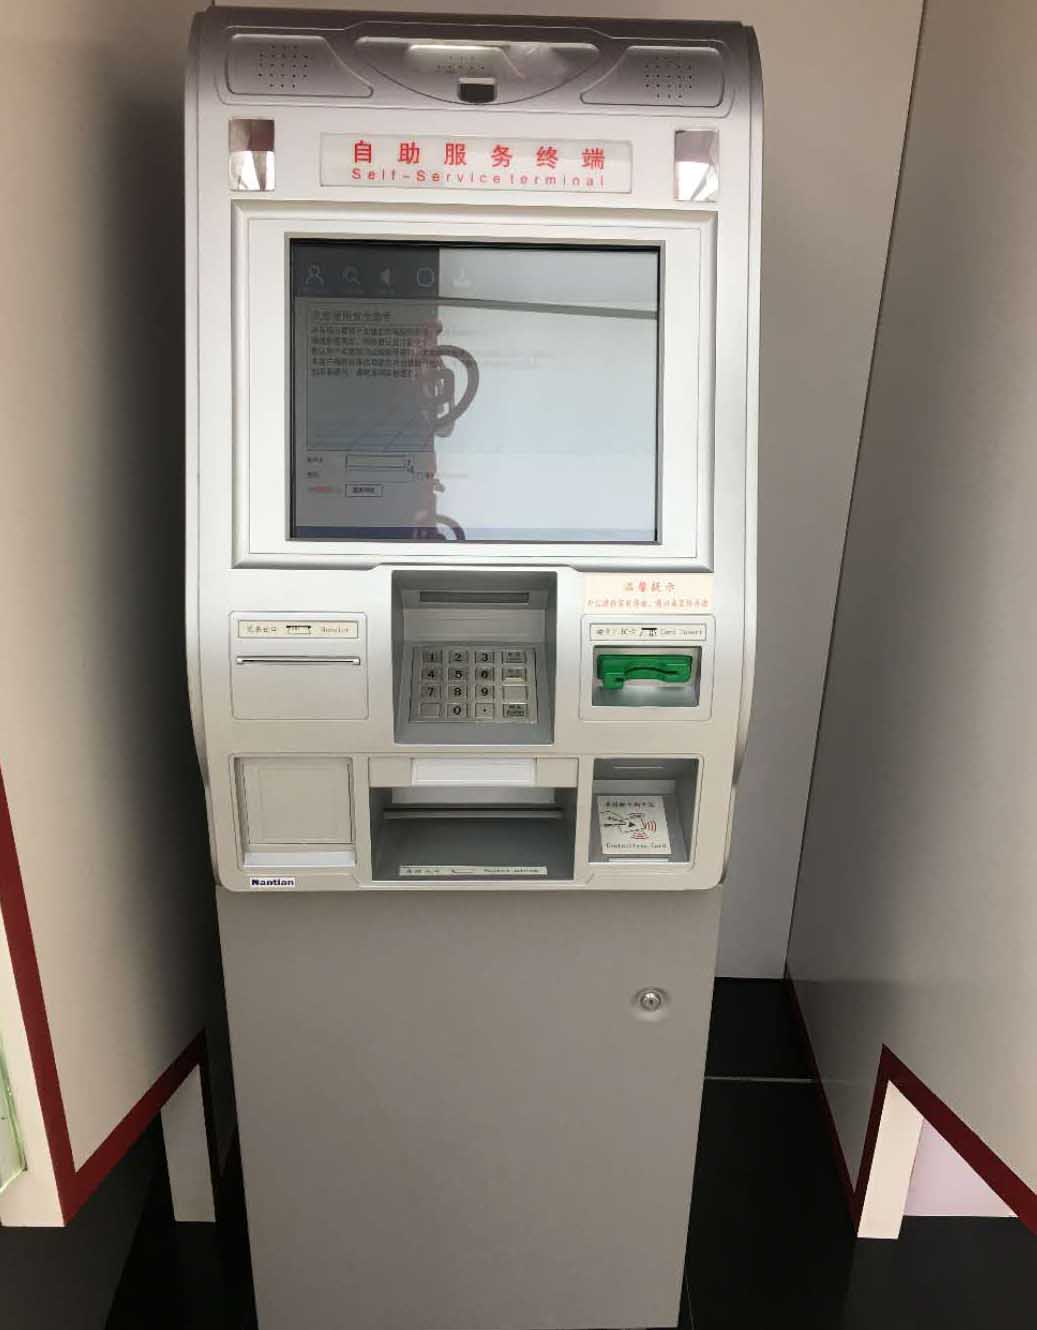 触摸屏玻璃釉料及条纹玻璃釉料在银行ATM机上的应用